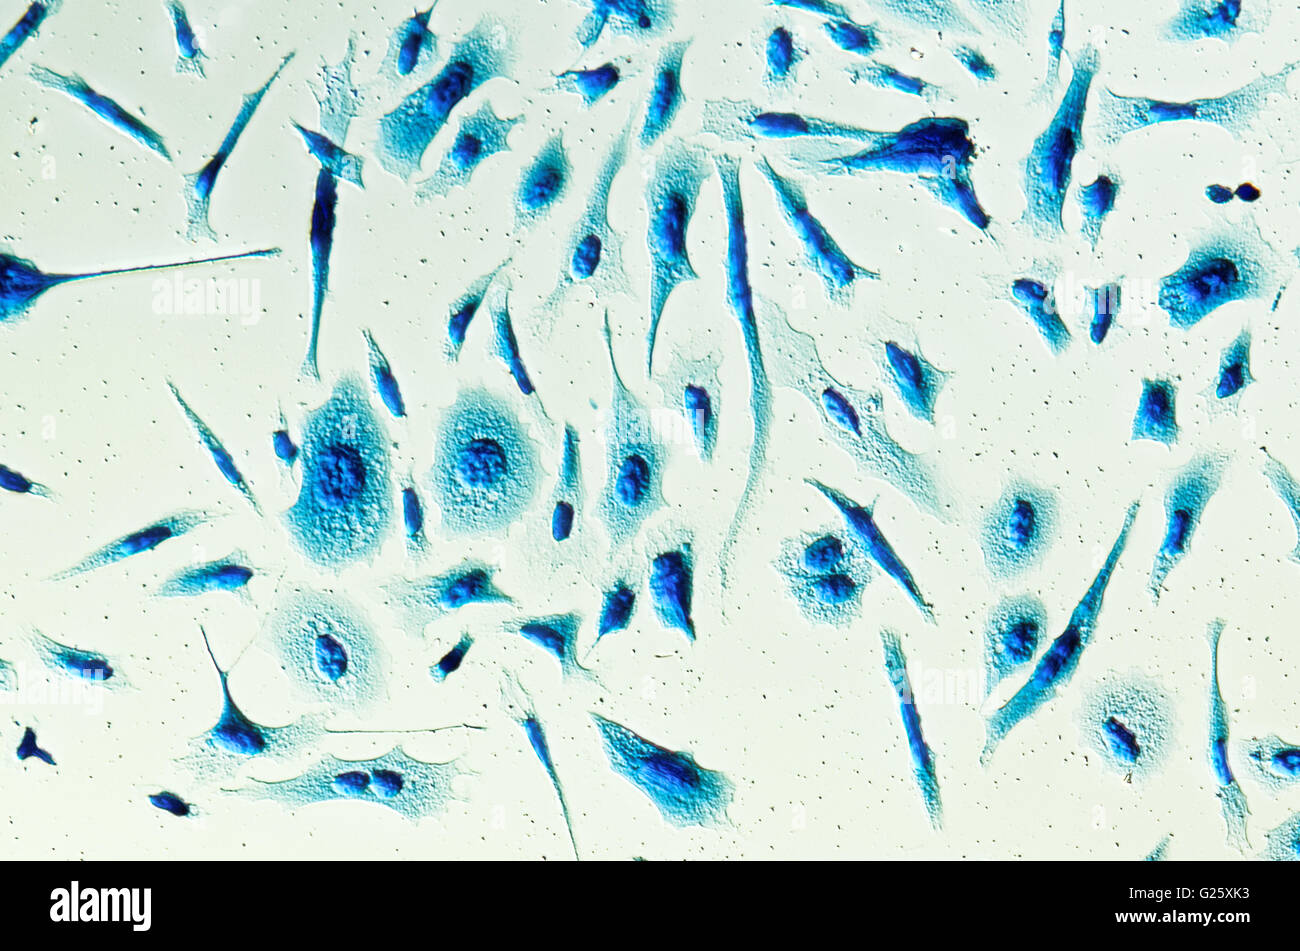 PC-3 menschlichen Prostatakrebszellen, befleckt mit Coomassie Blau, unter differen Interferenz-Kontrast-Mikroskop. Stockfoto